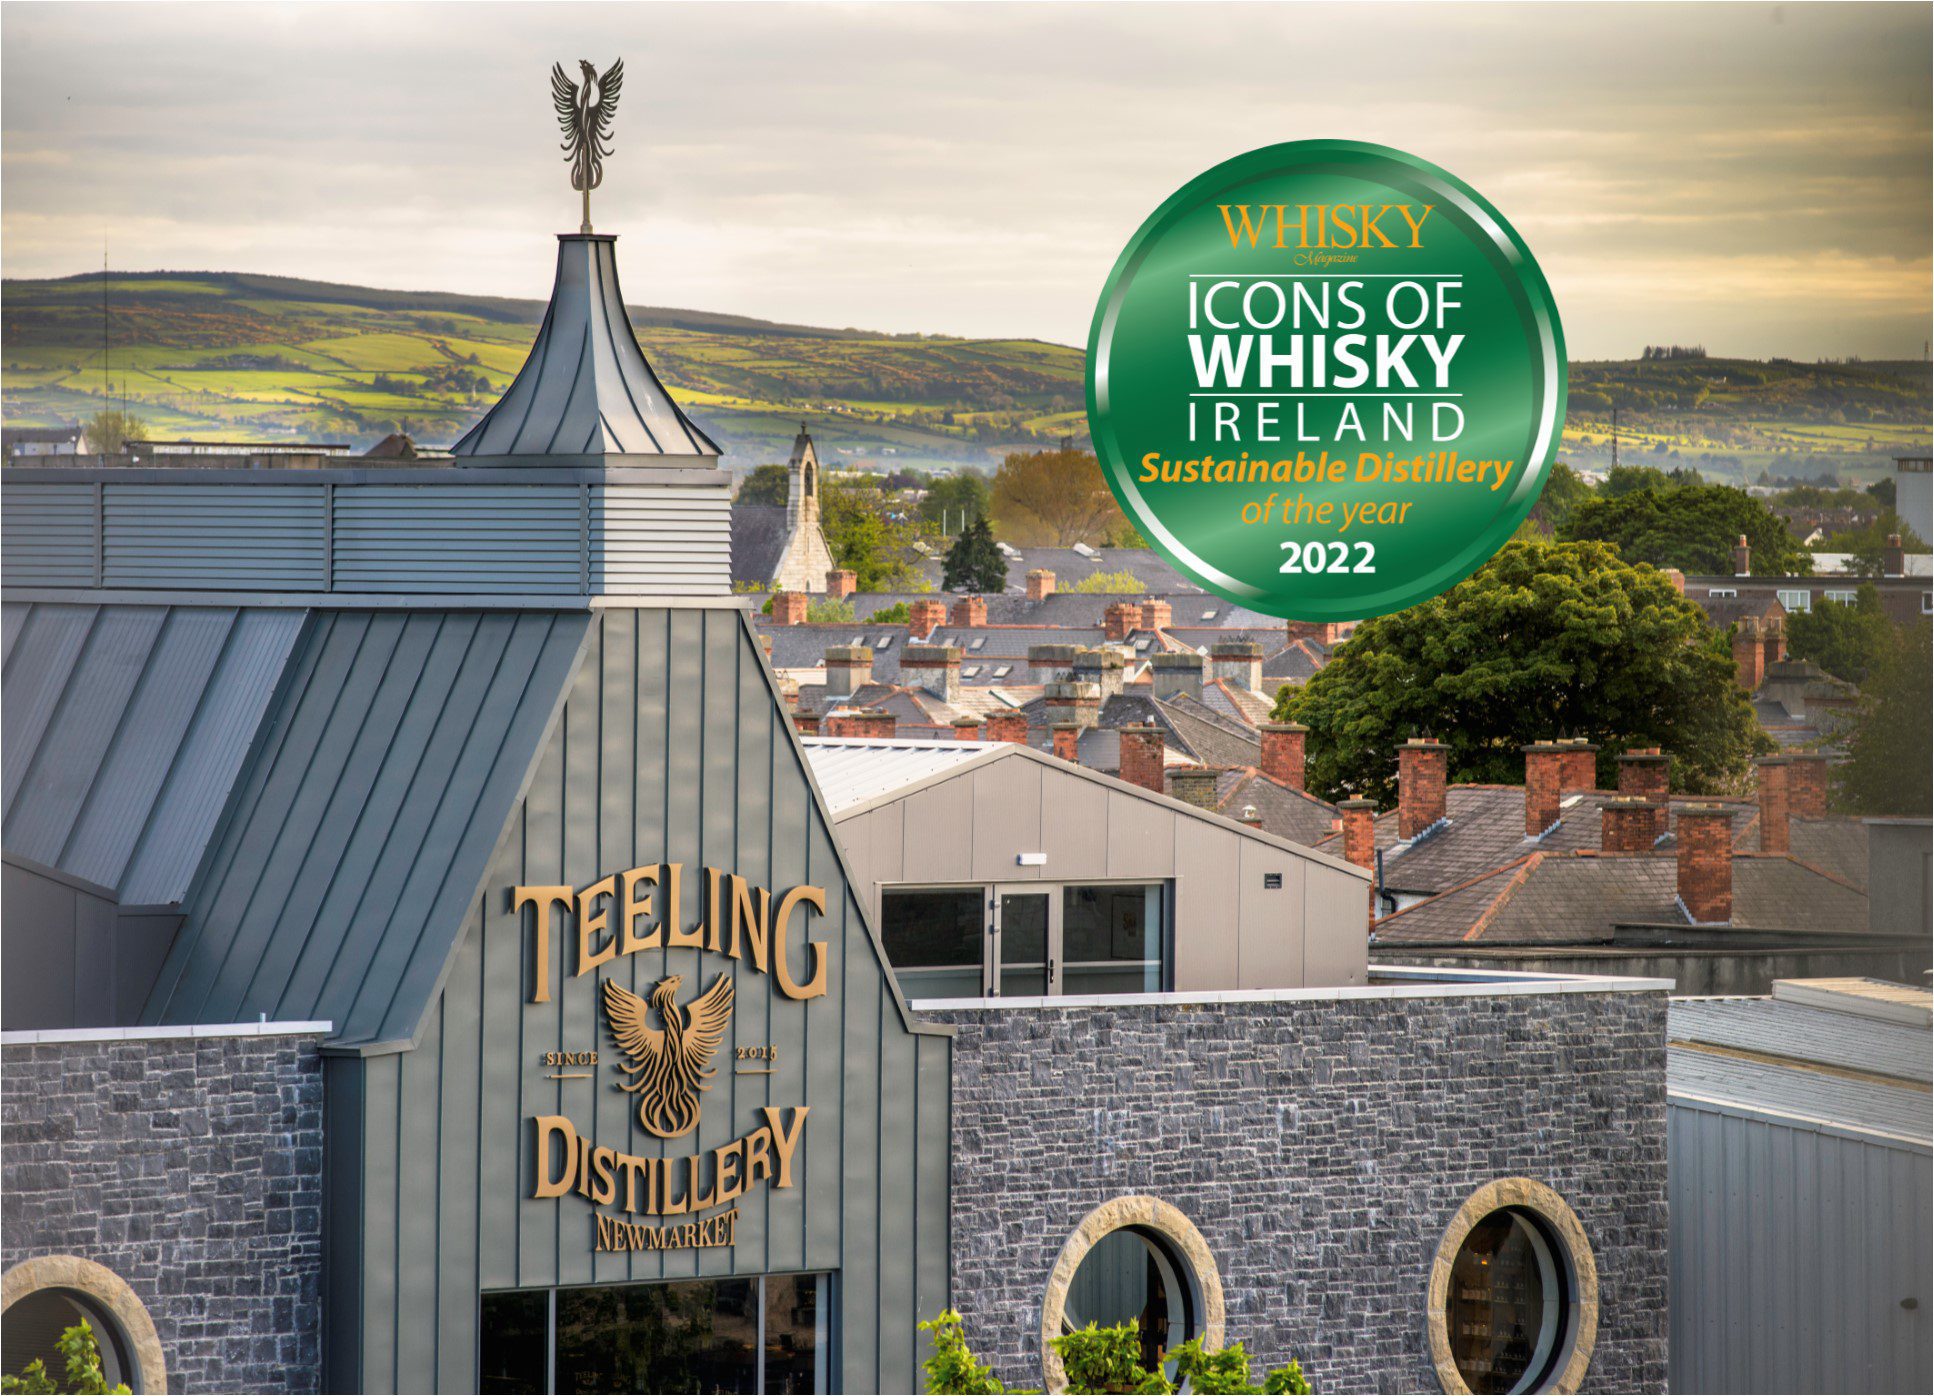 Teeling Whiskey win sustainable Distillery Award Irish Whiskey Blogger Stuart McNamaranbsp- - International Whiskey Reviews by Irish Whiskey Blogger Stuart McNamara